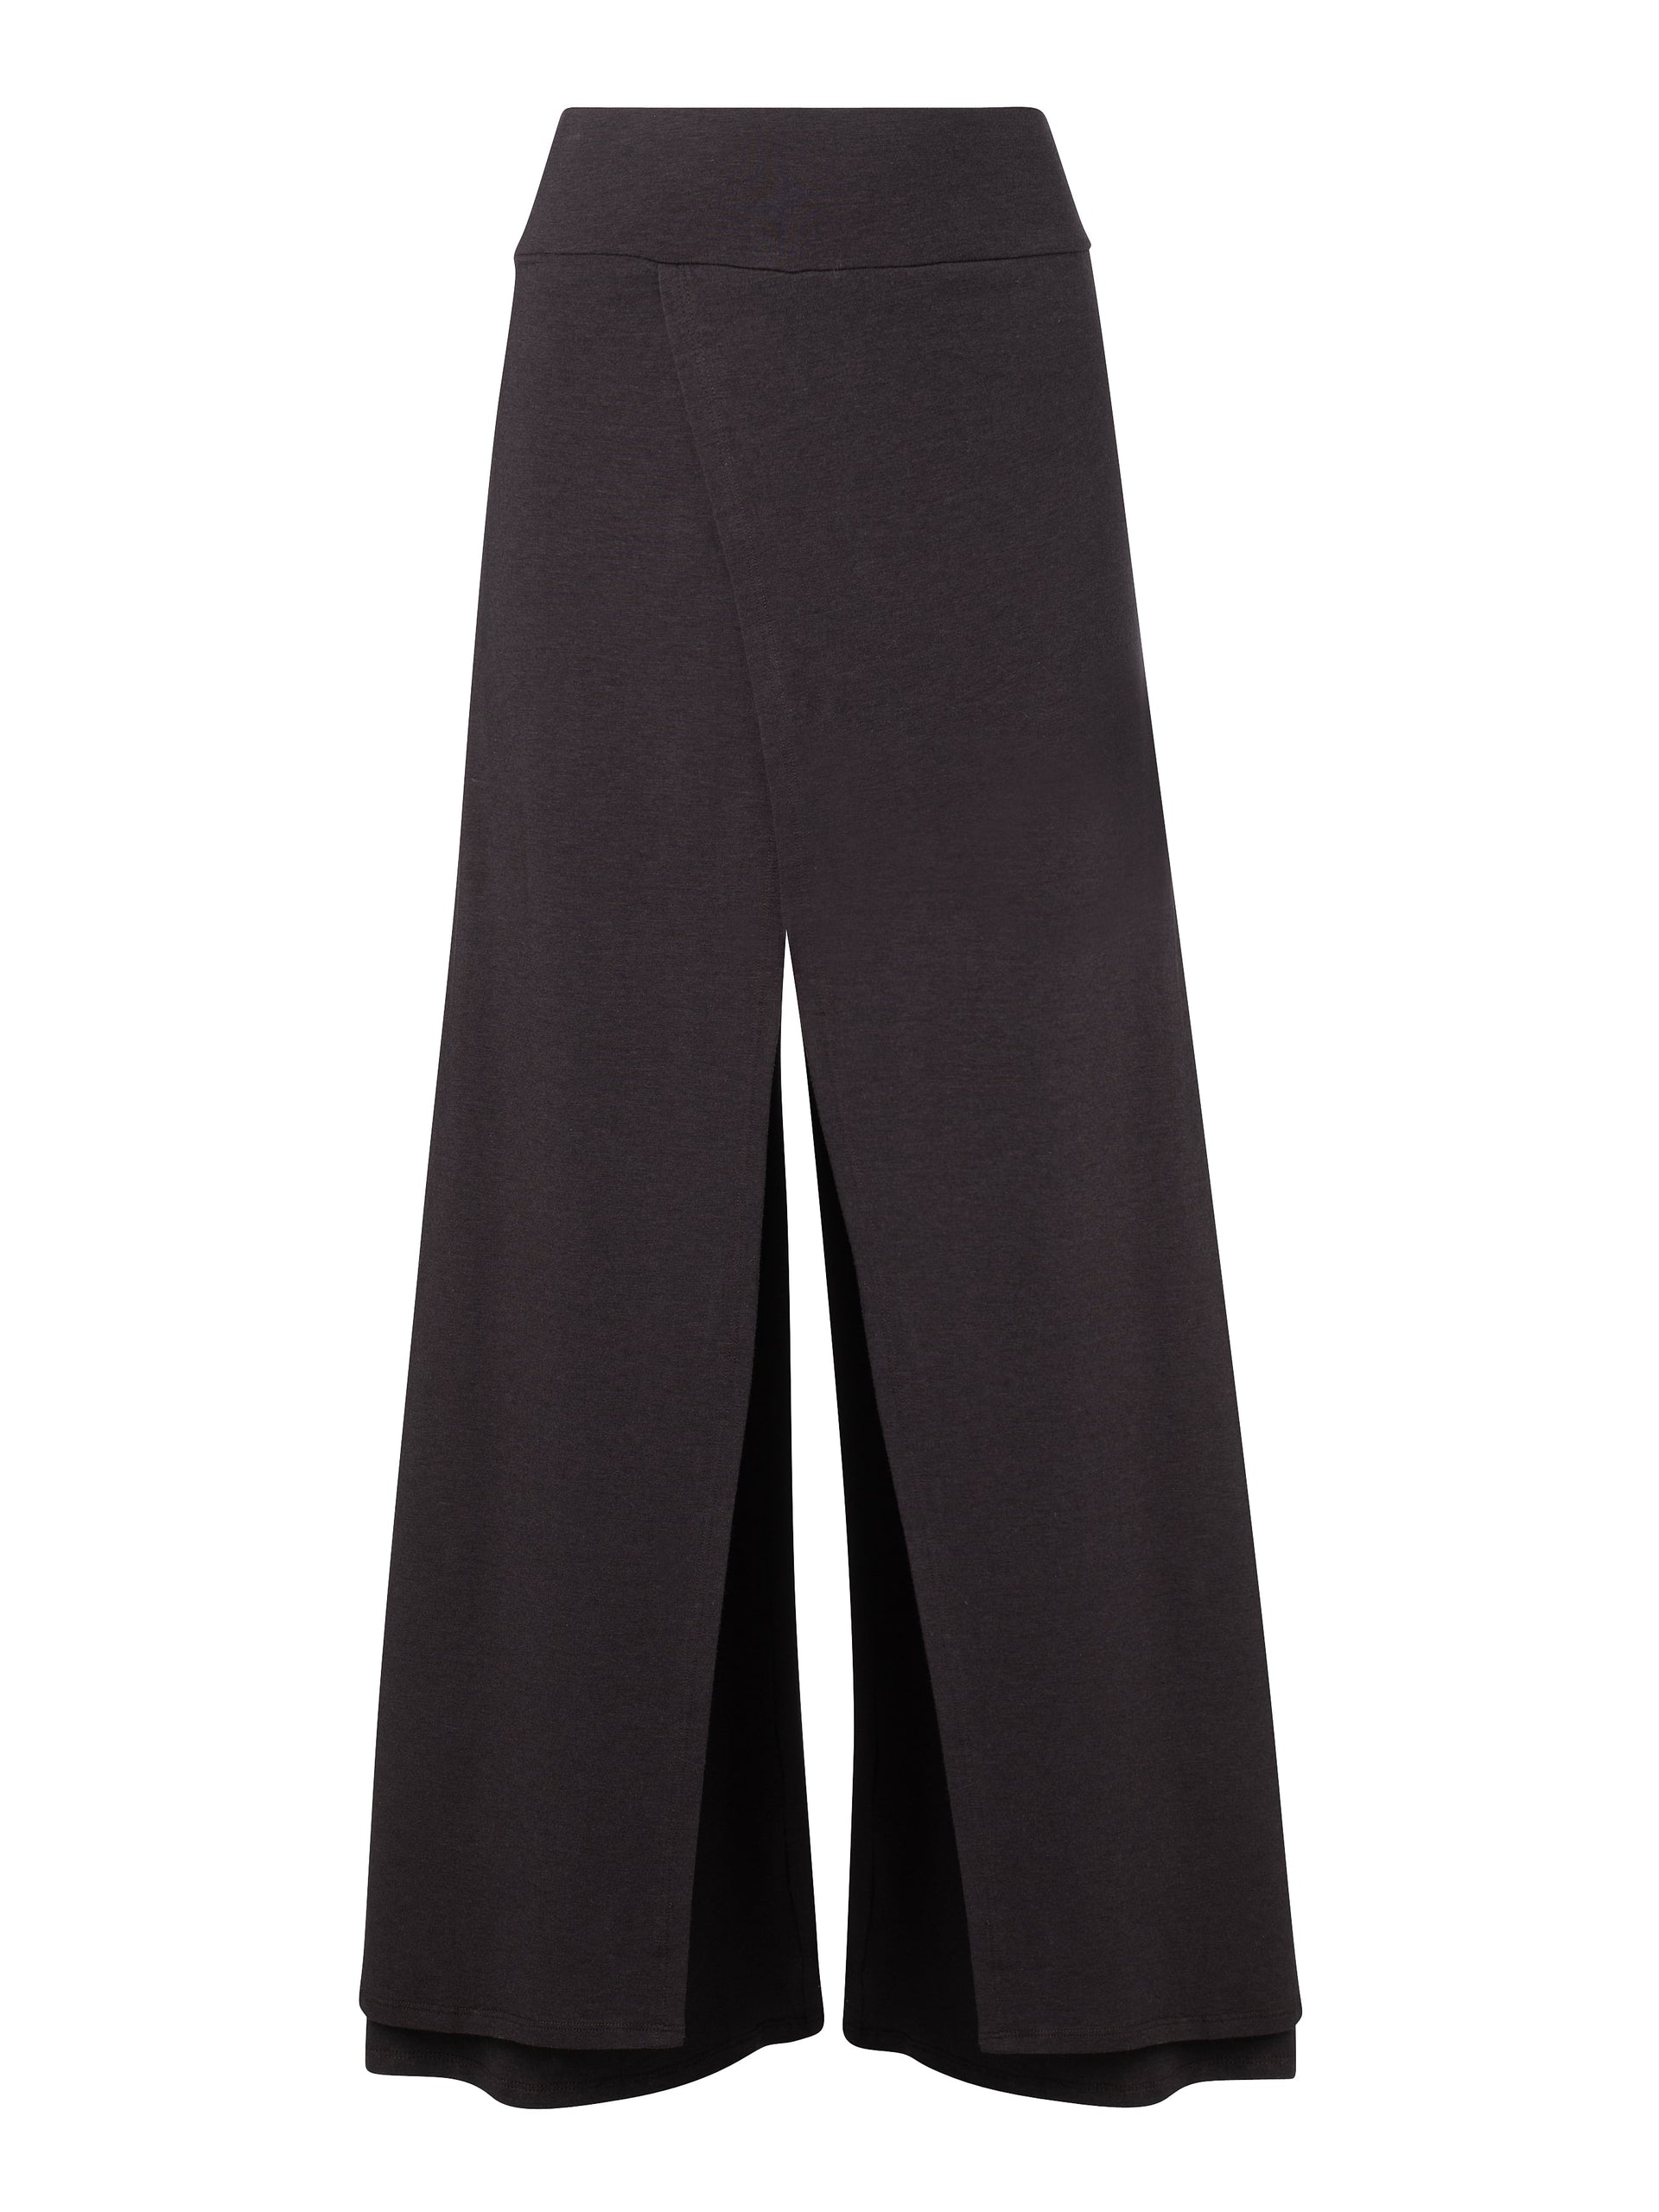 Pantalon Isabella Femme | Pantalon Confort, Maille Noir - SunTrust Lease